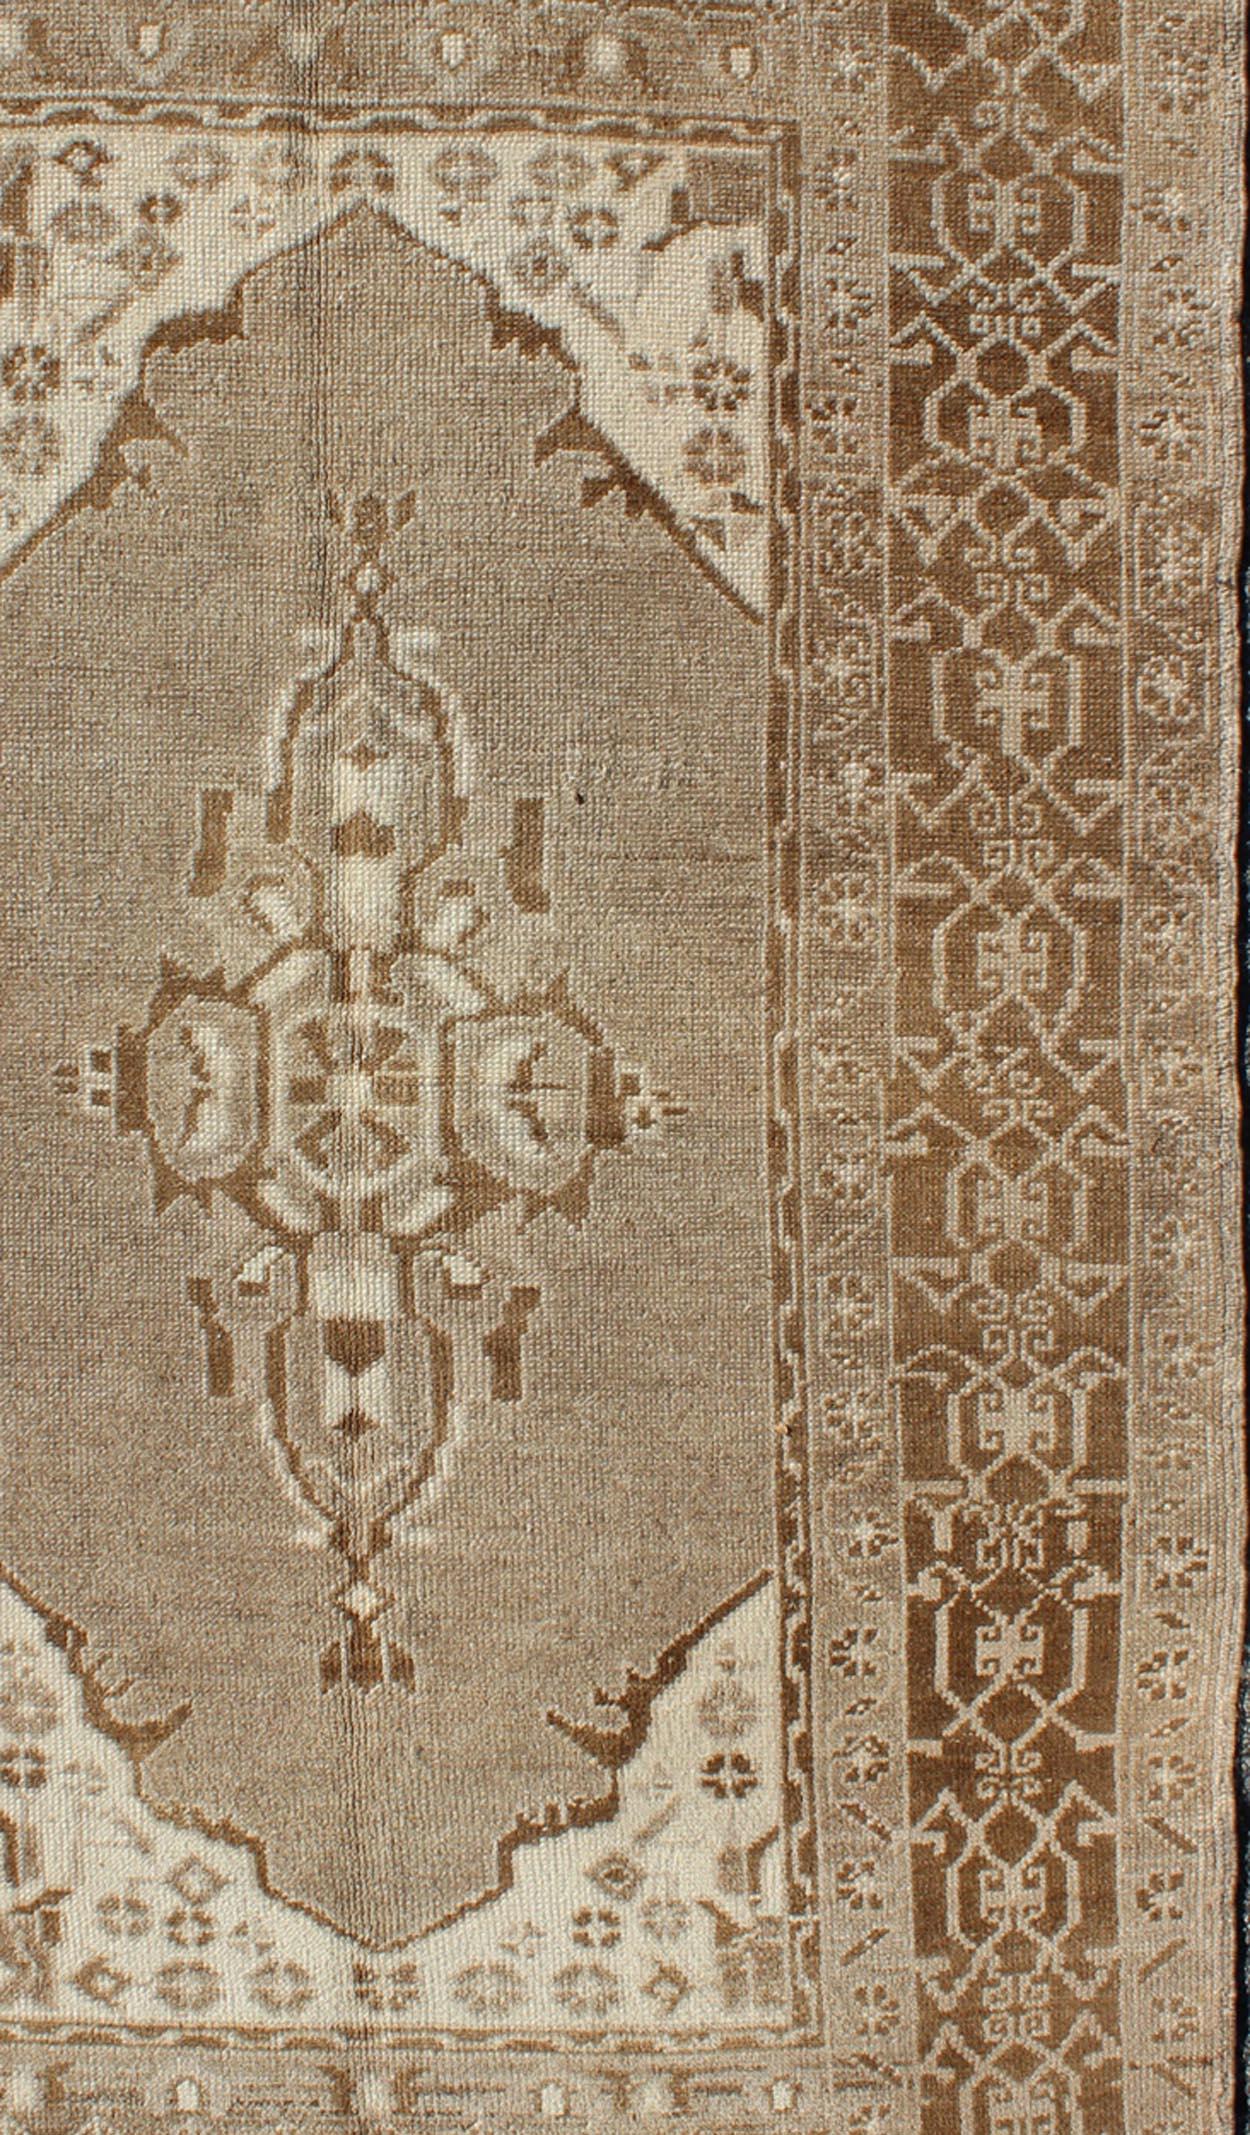 Das schöne und zarte Design dieses Teppichs mit seinem taupefarbenen und grauen Hintergrund und dem sanften Medaillon wird von sich wiederholenden geometrischen Elementen in Brauntönen eingerahmt. Die maskuline Bordüre verleiht dem Teppich ein